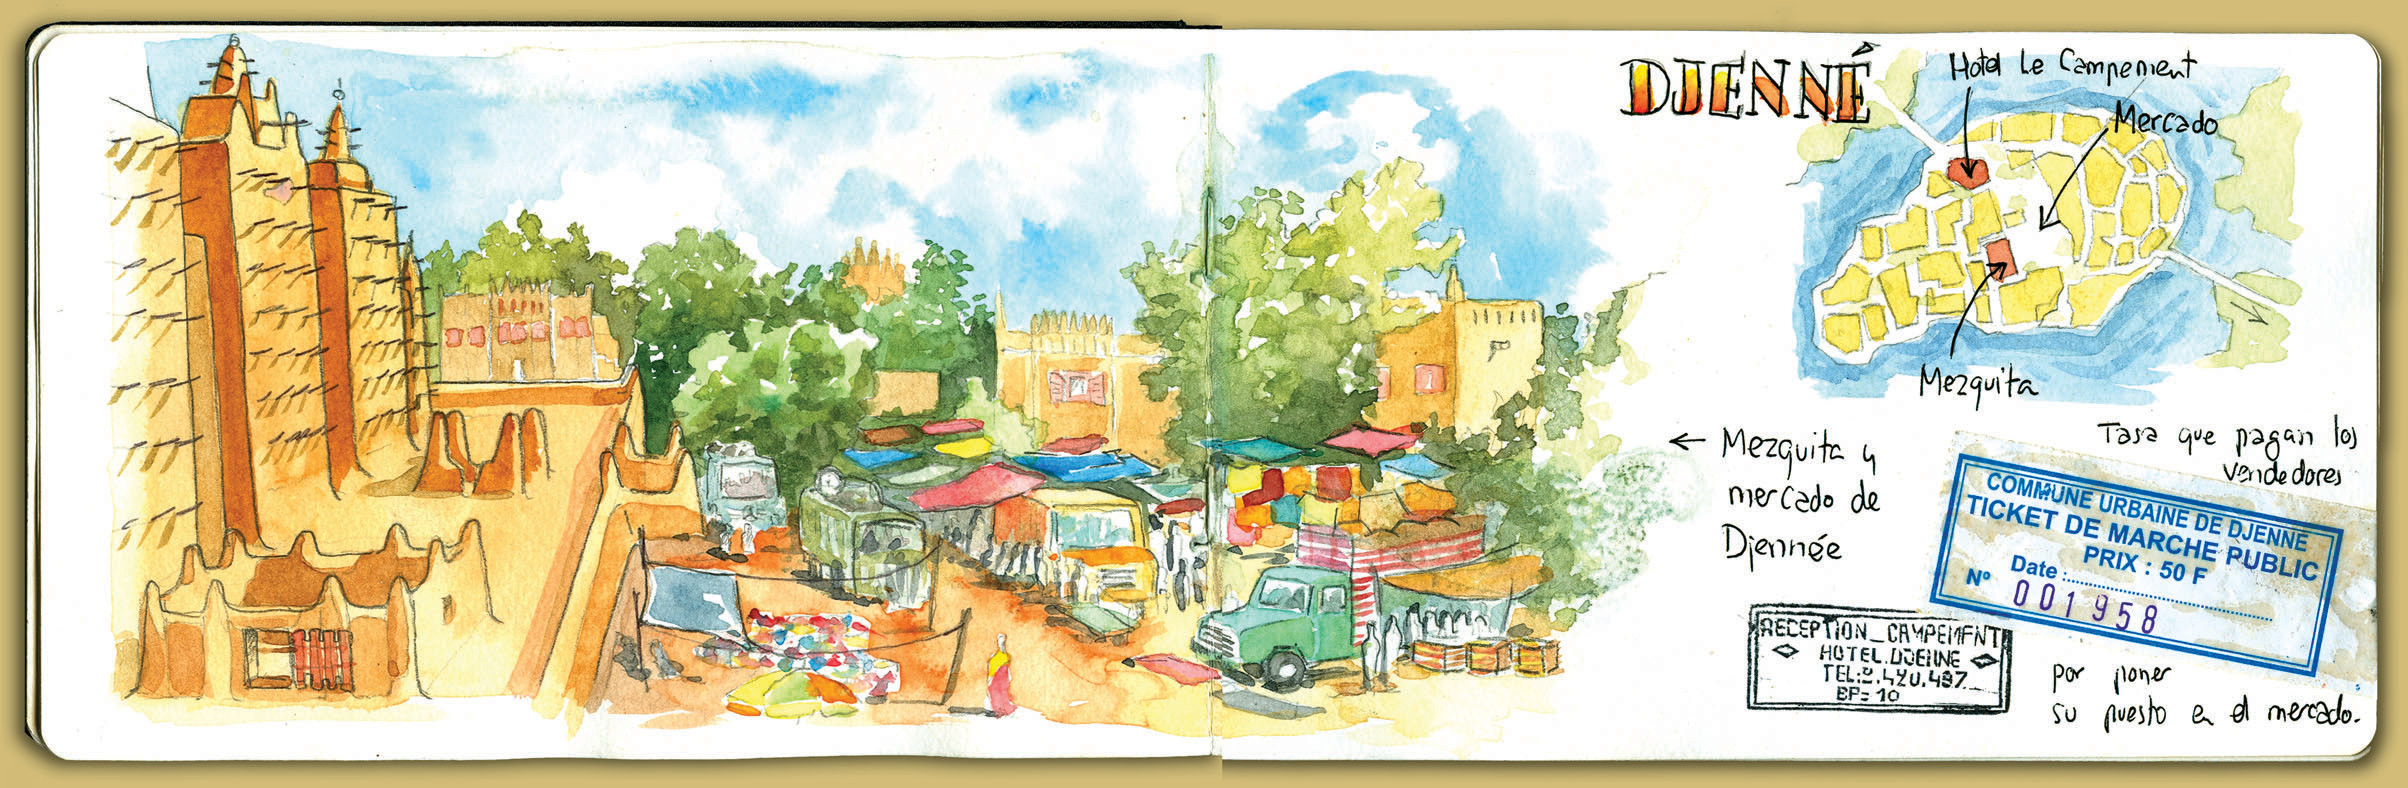 Mali Travel Diary